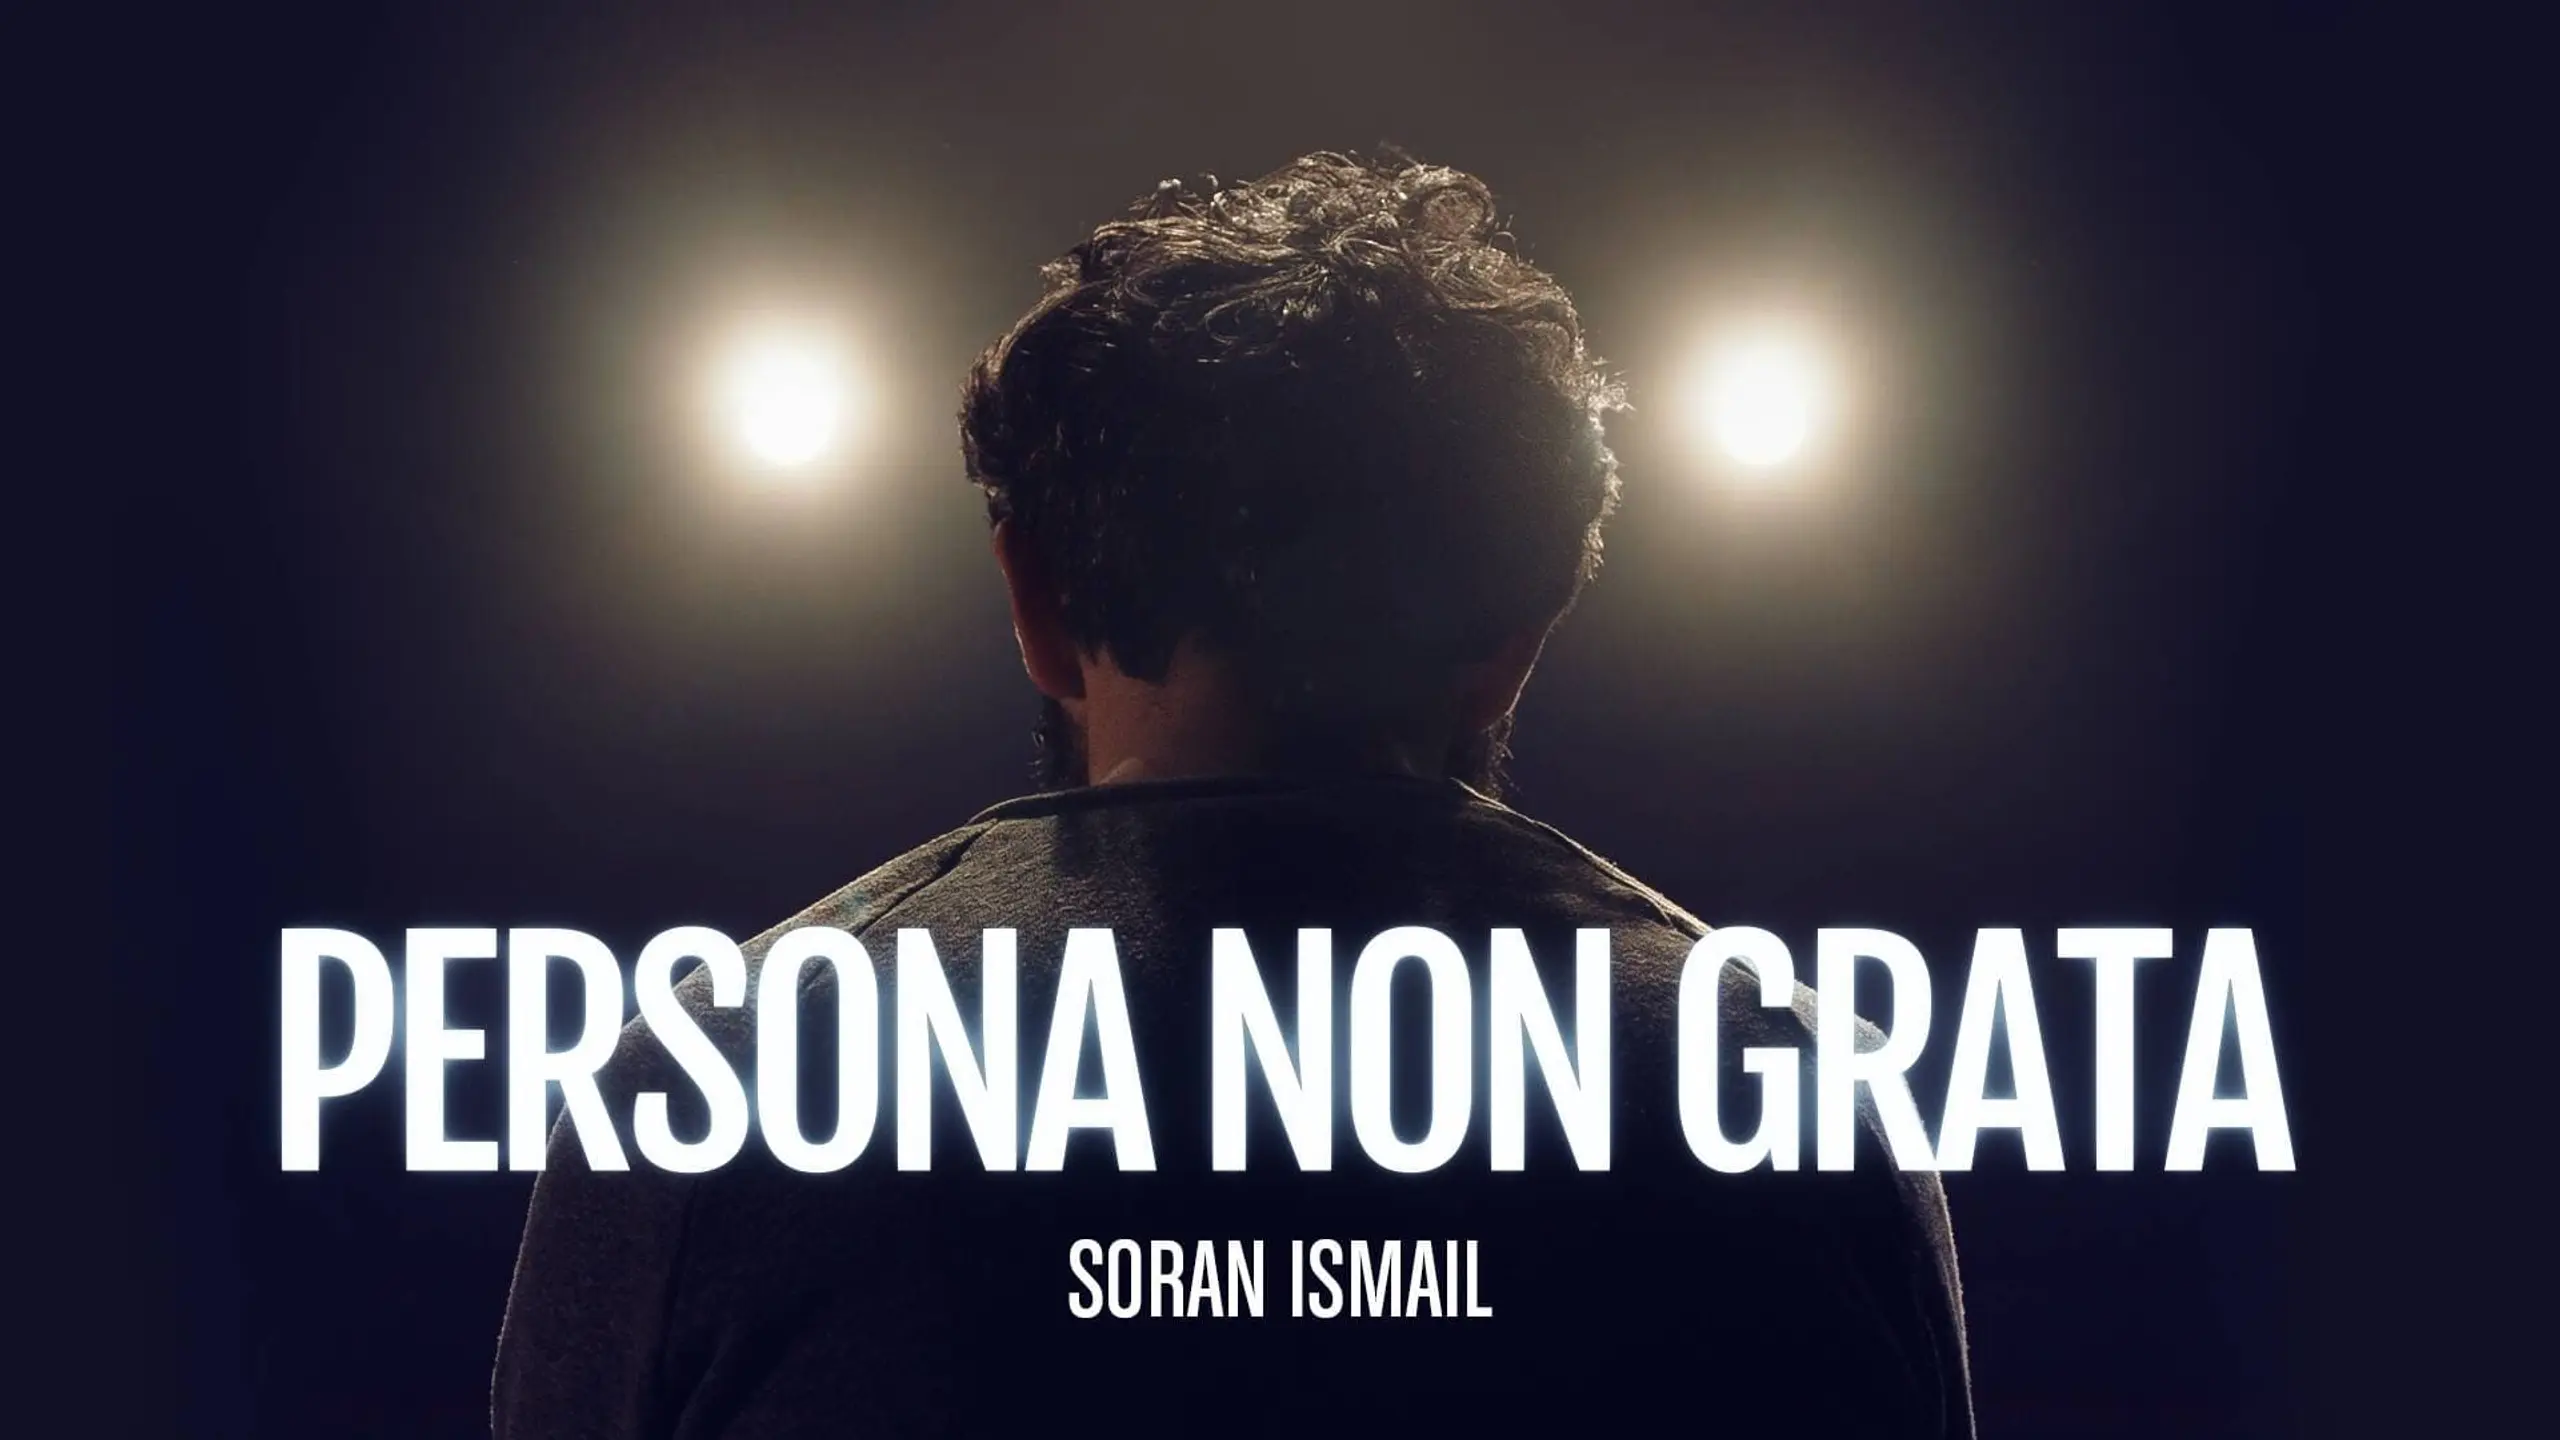 Persona non grata - Soran Ismail